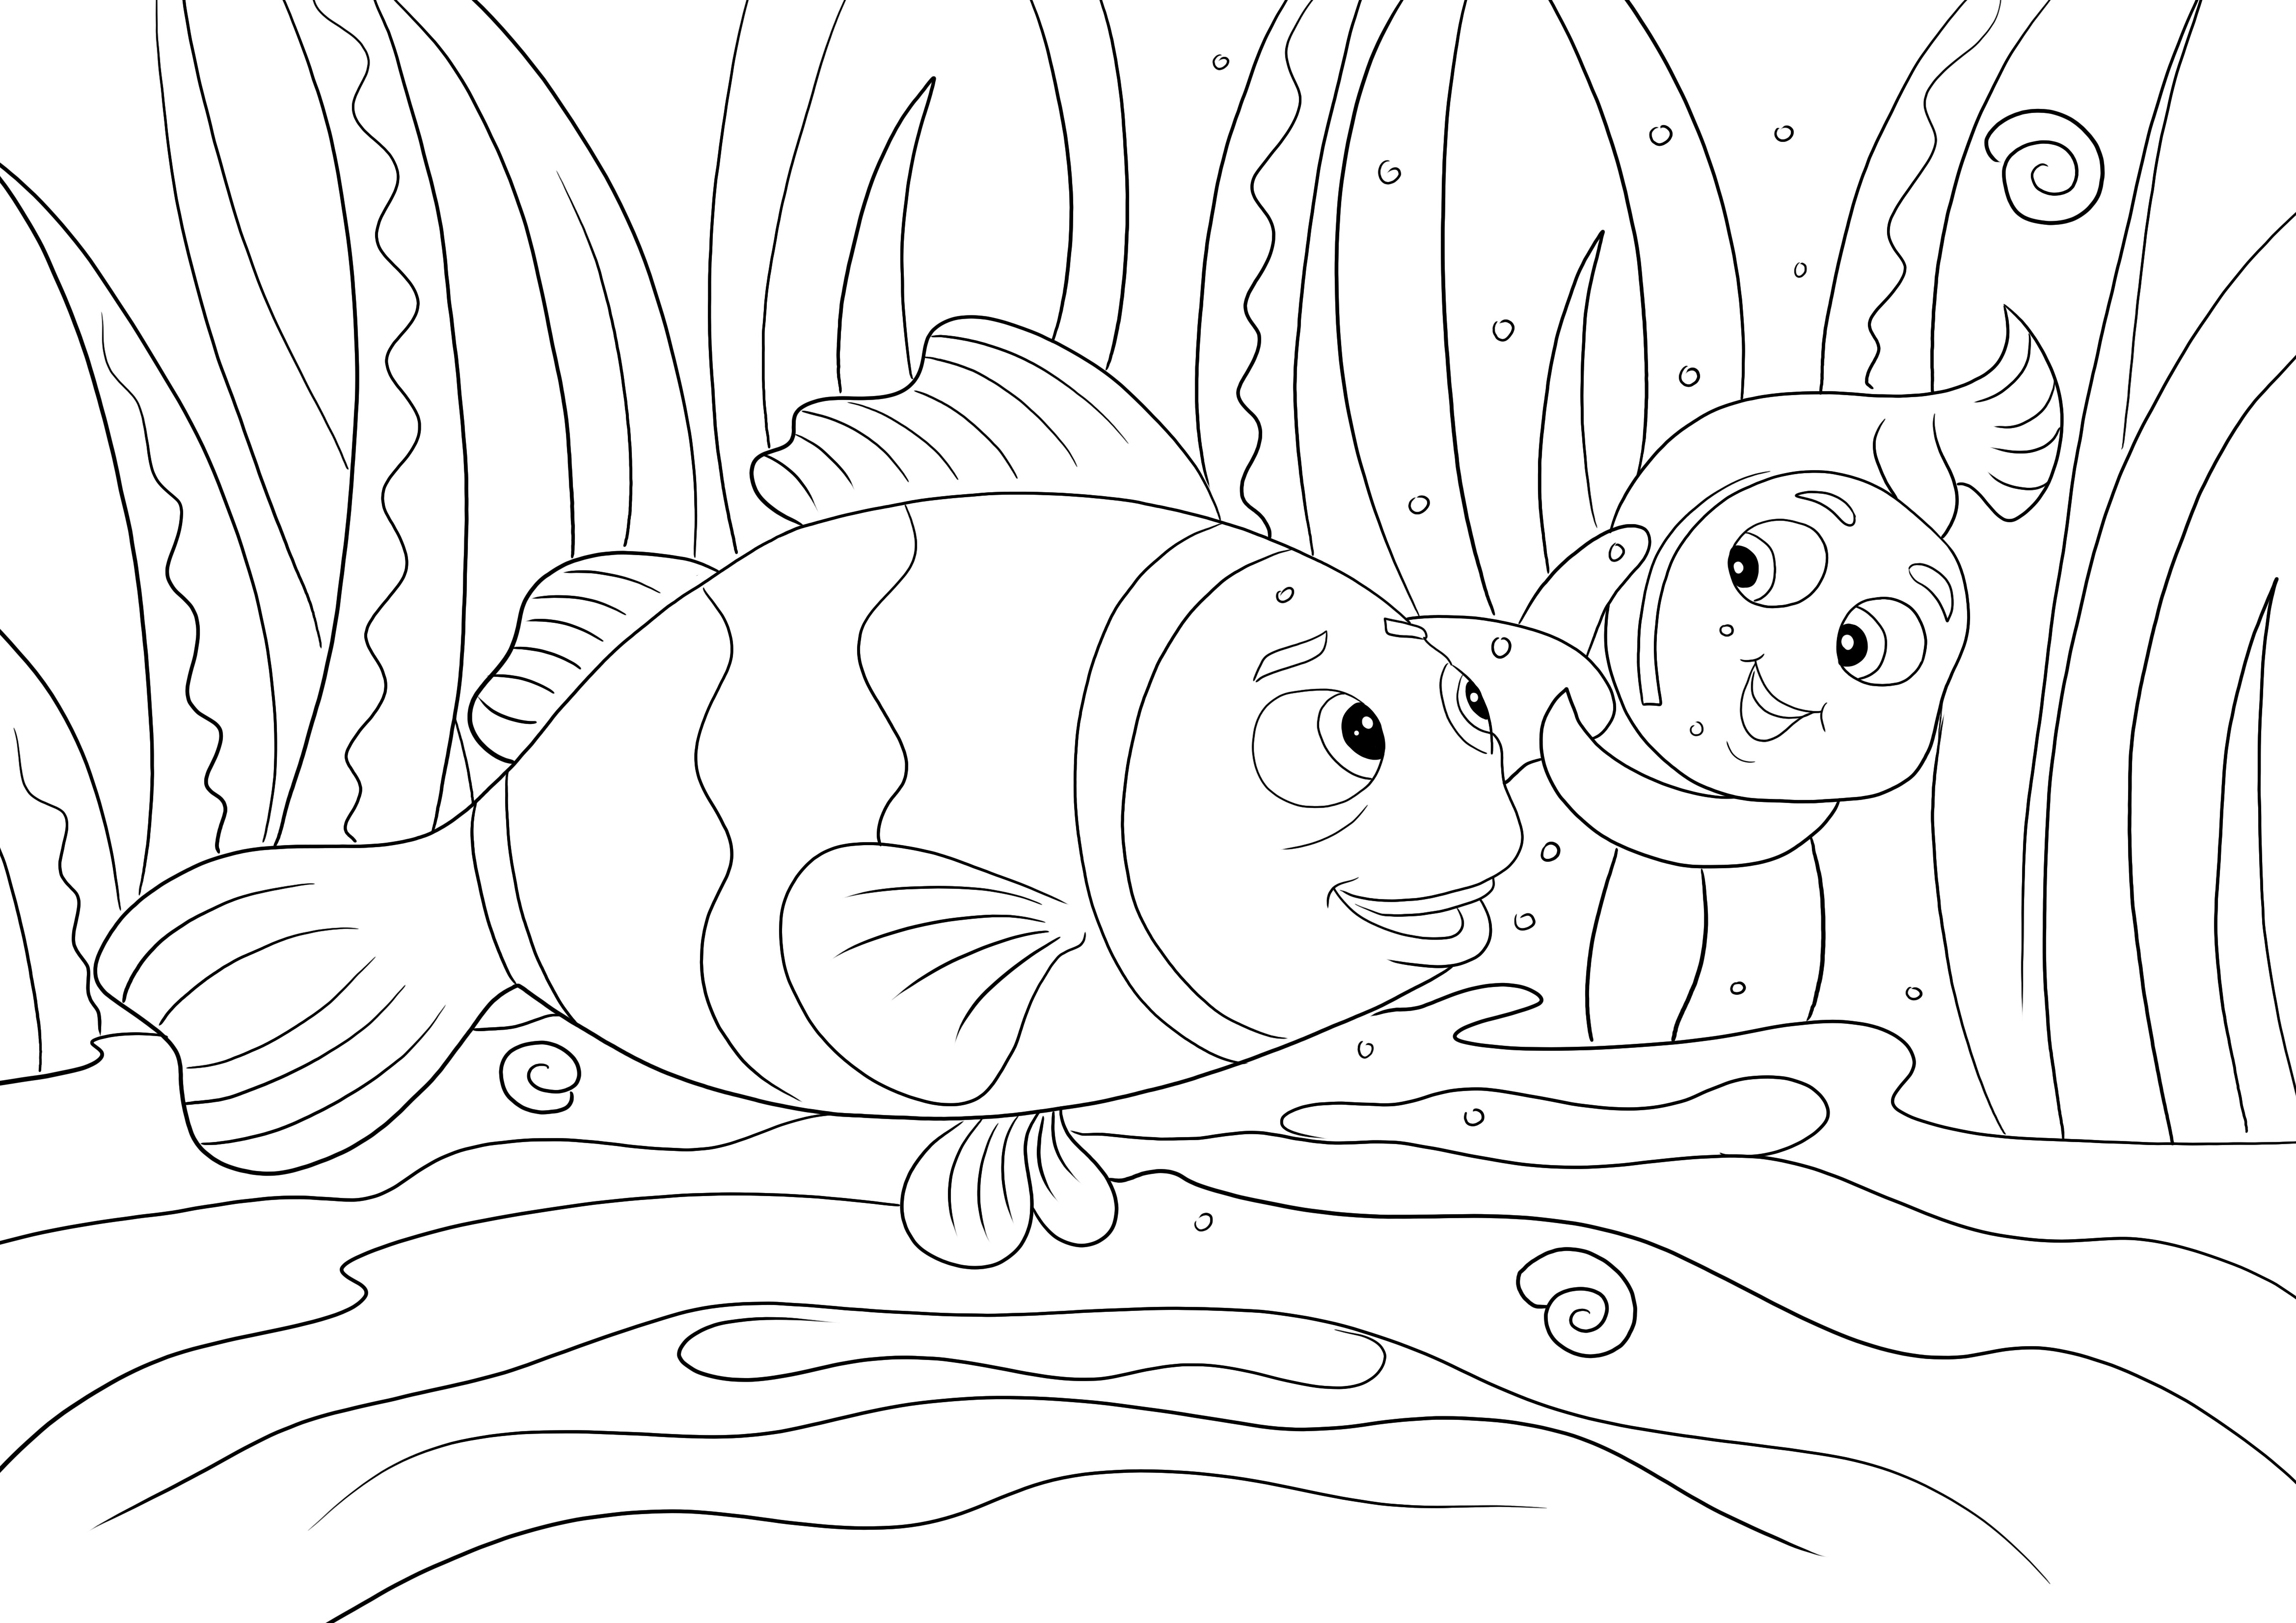 Nemo et Marylin nageant - une image facile à imprimer et à colorier